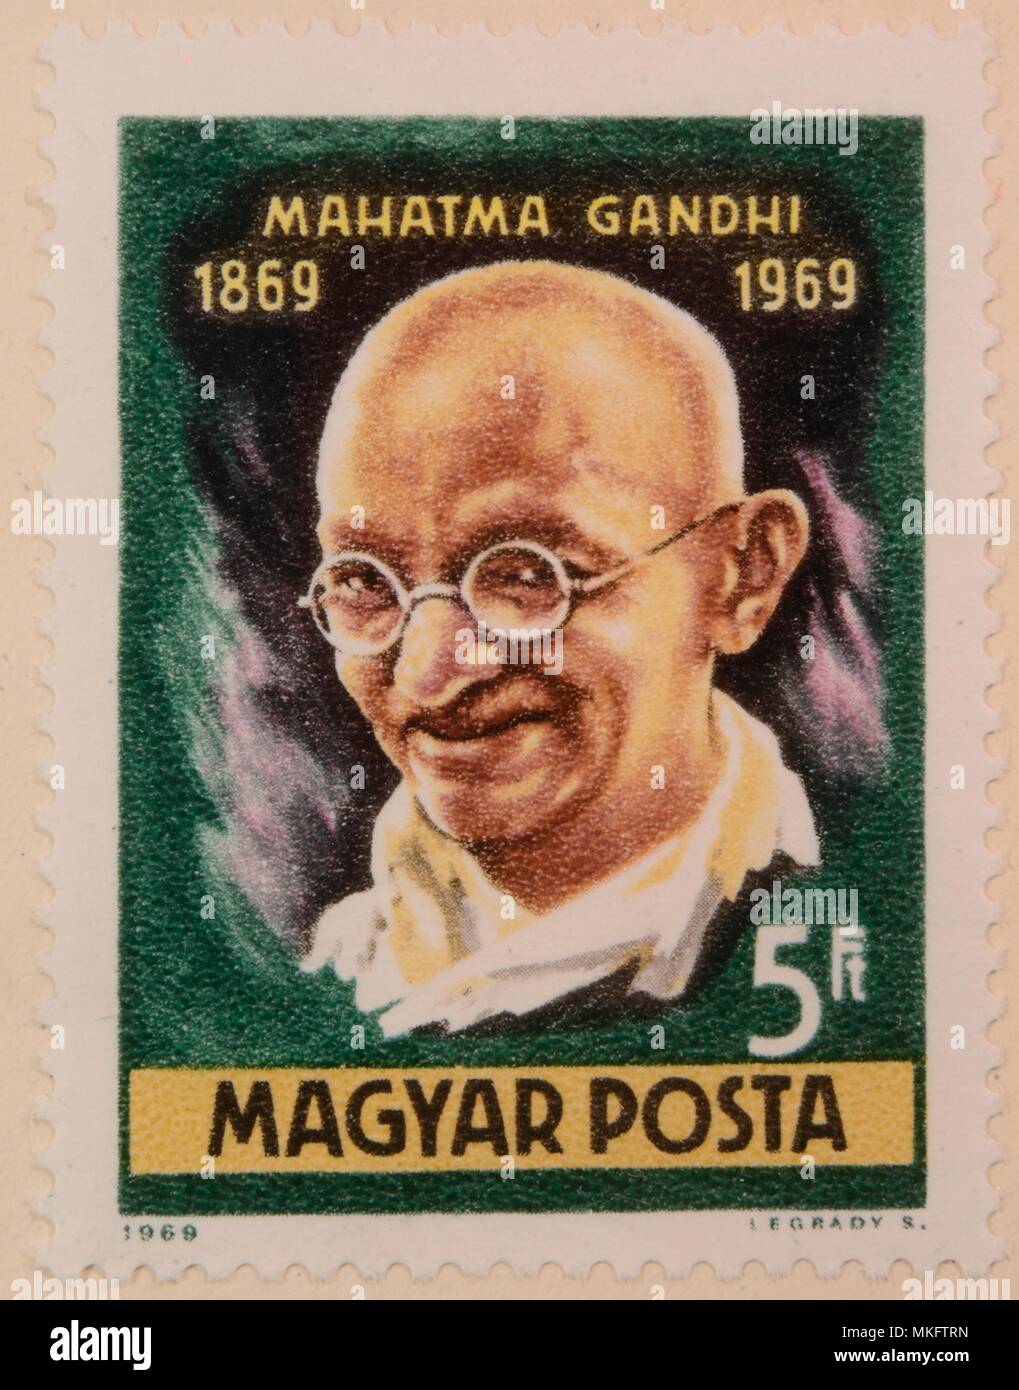 Mahatma Gandi, le chef de l'Inde non-violente du mouvement indépendantiste, portrait sur un timbre Hongrois Banque D'Images